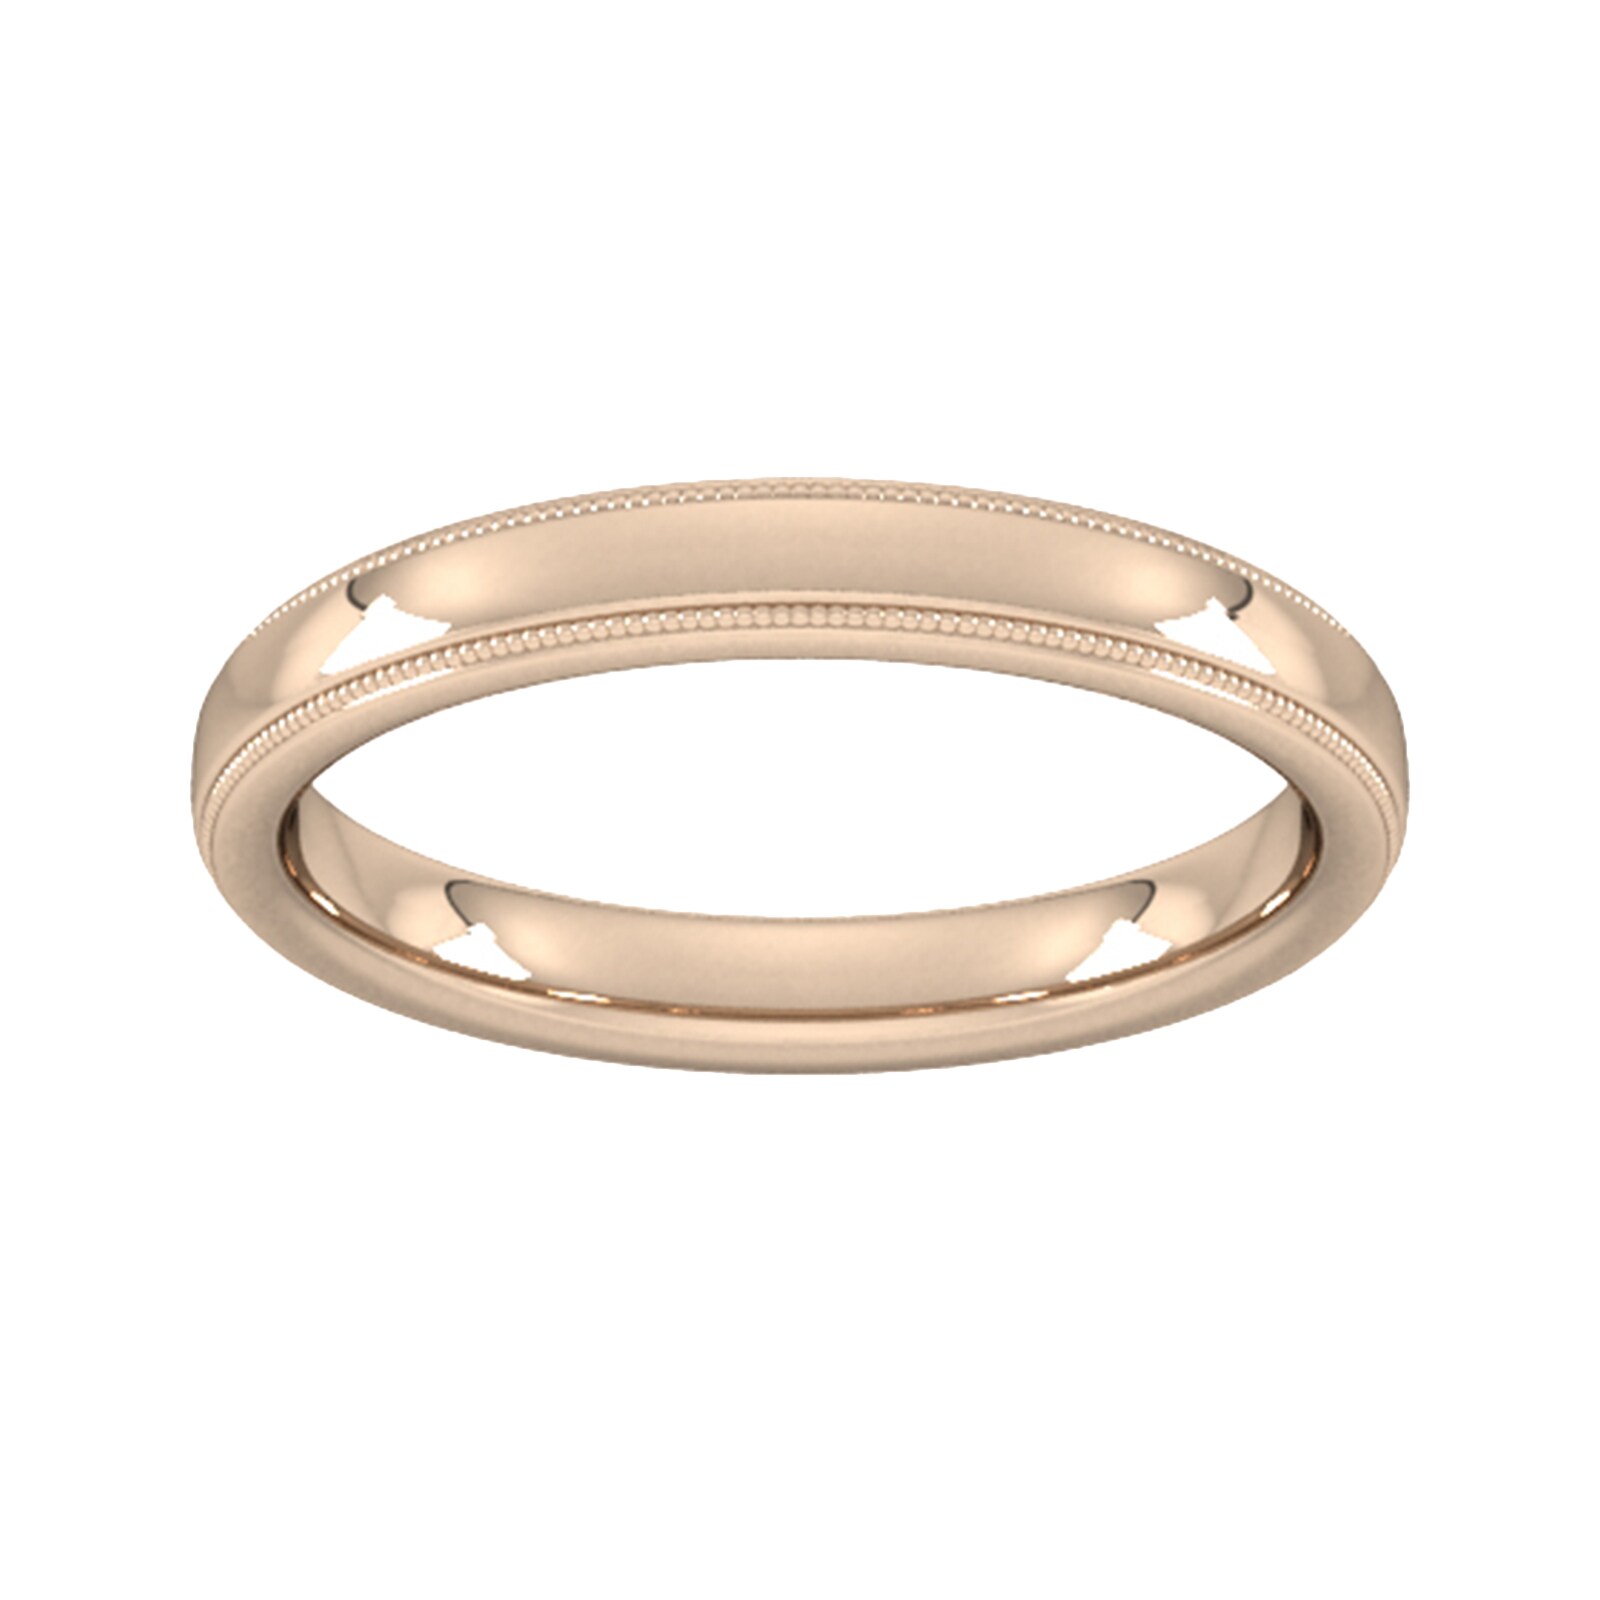 3mm Slight Court Heavy Milgrain Edge Wedding Ring In 9 Carat Rose Gold - Ring Size I